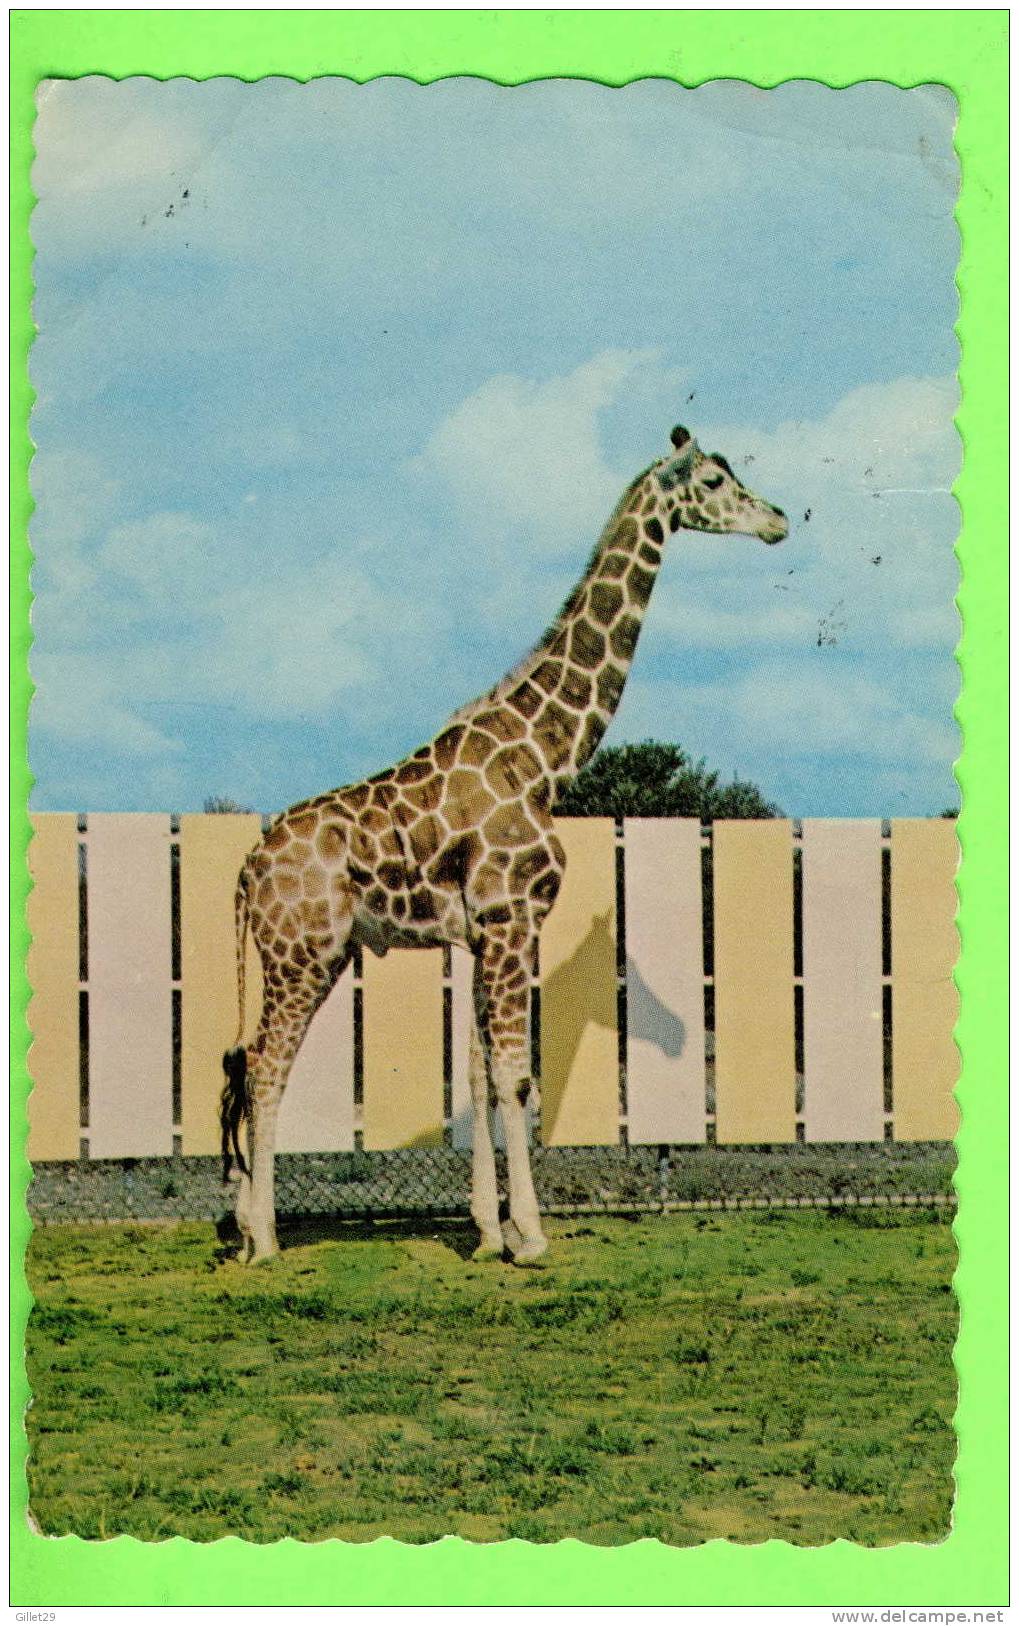 GIRAFE - BÉBÉ GIRAFE RETICULÉE D'AFRIQUE - PARC ZOOLOGIQUE DE GRANBY - PUB. BY J. BIENVENUE - - Giraffes